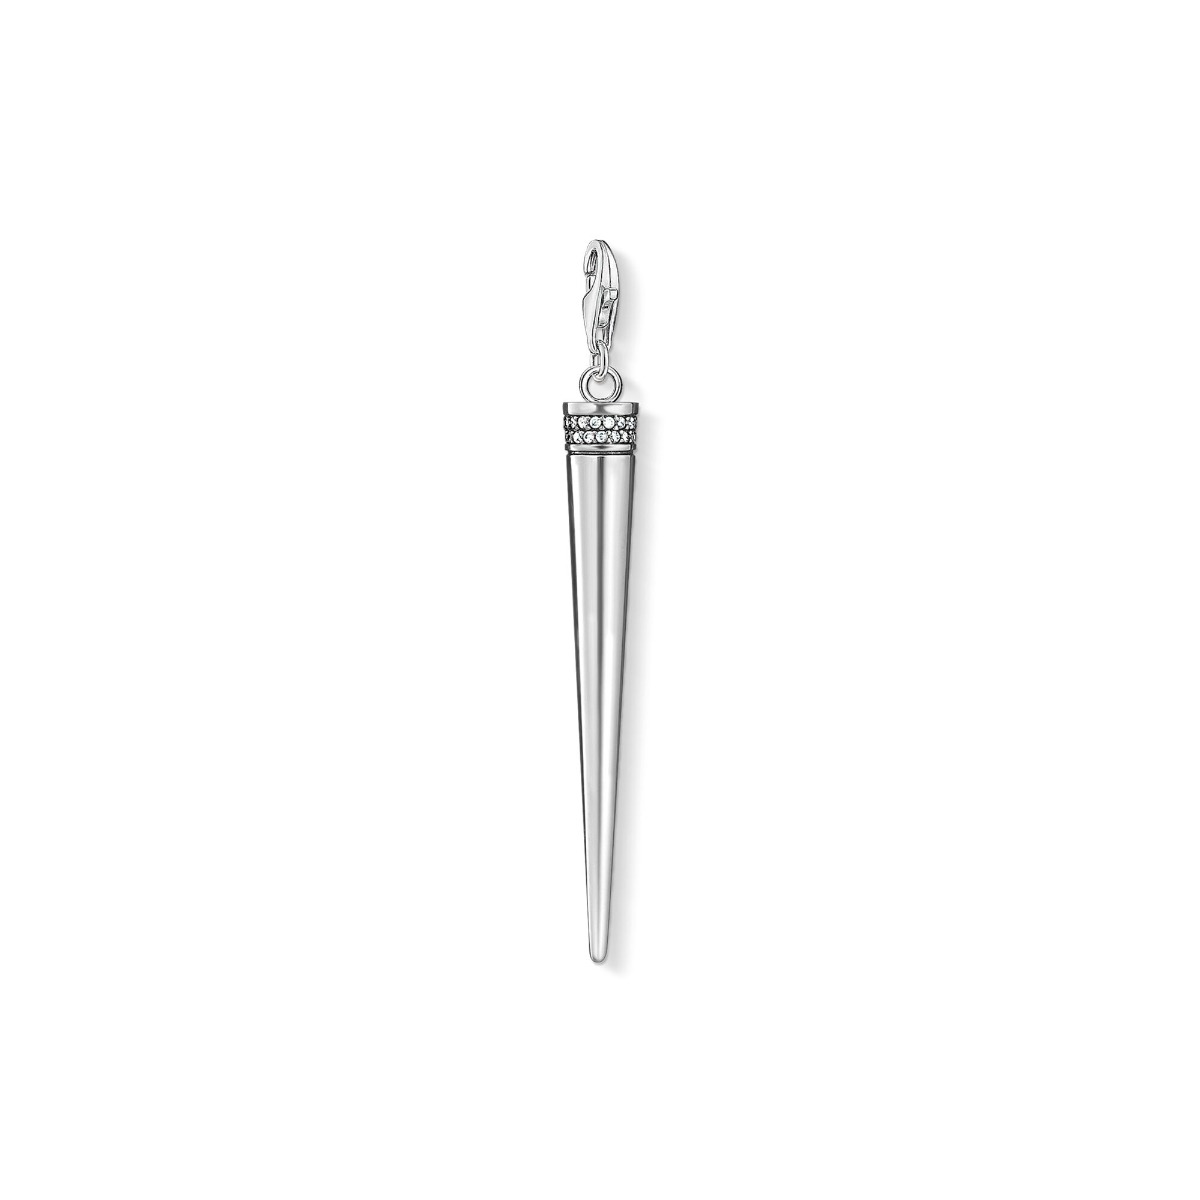 Thomas Sabo Charm Pendant - Silver and Zirconia Cone Y0045-643-14